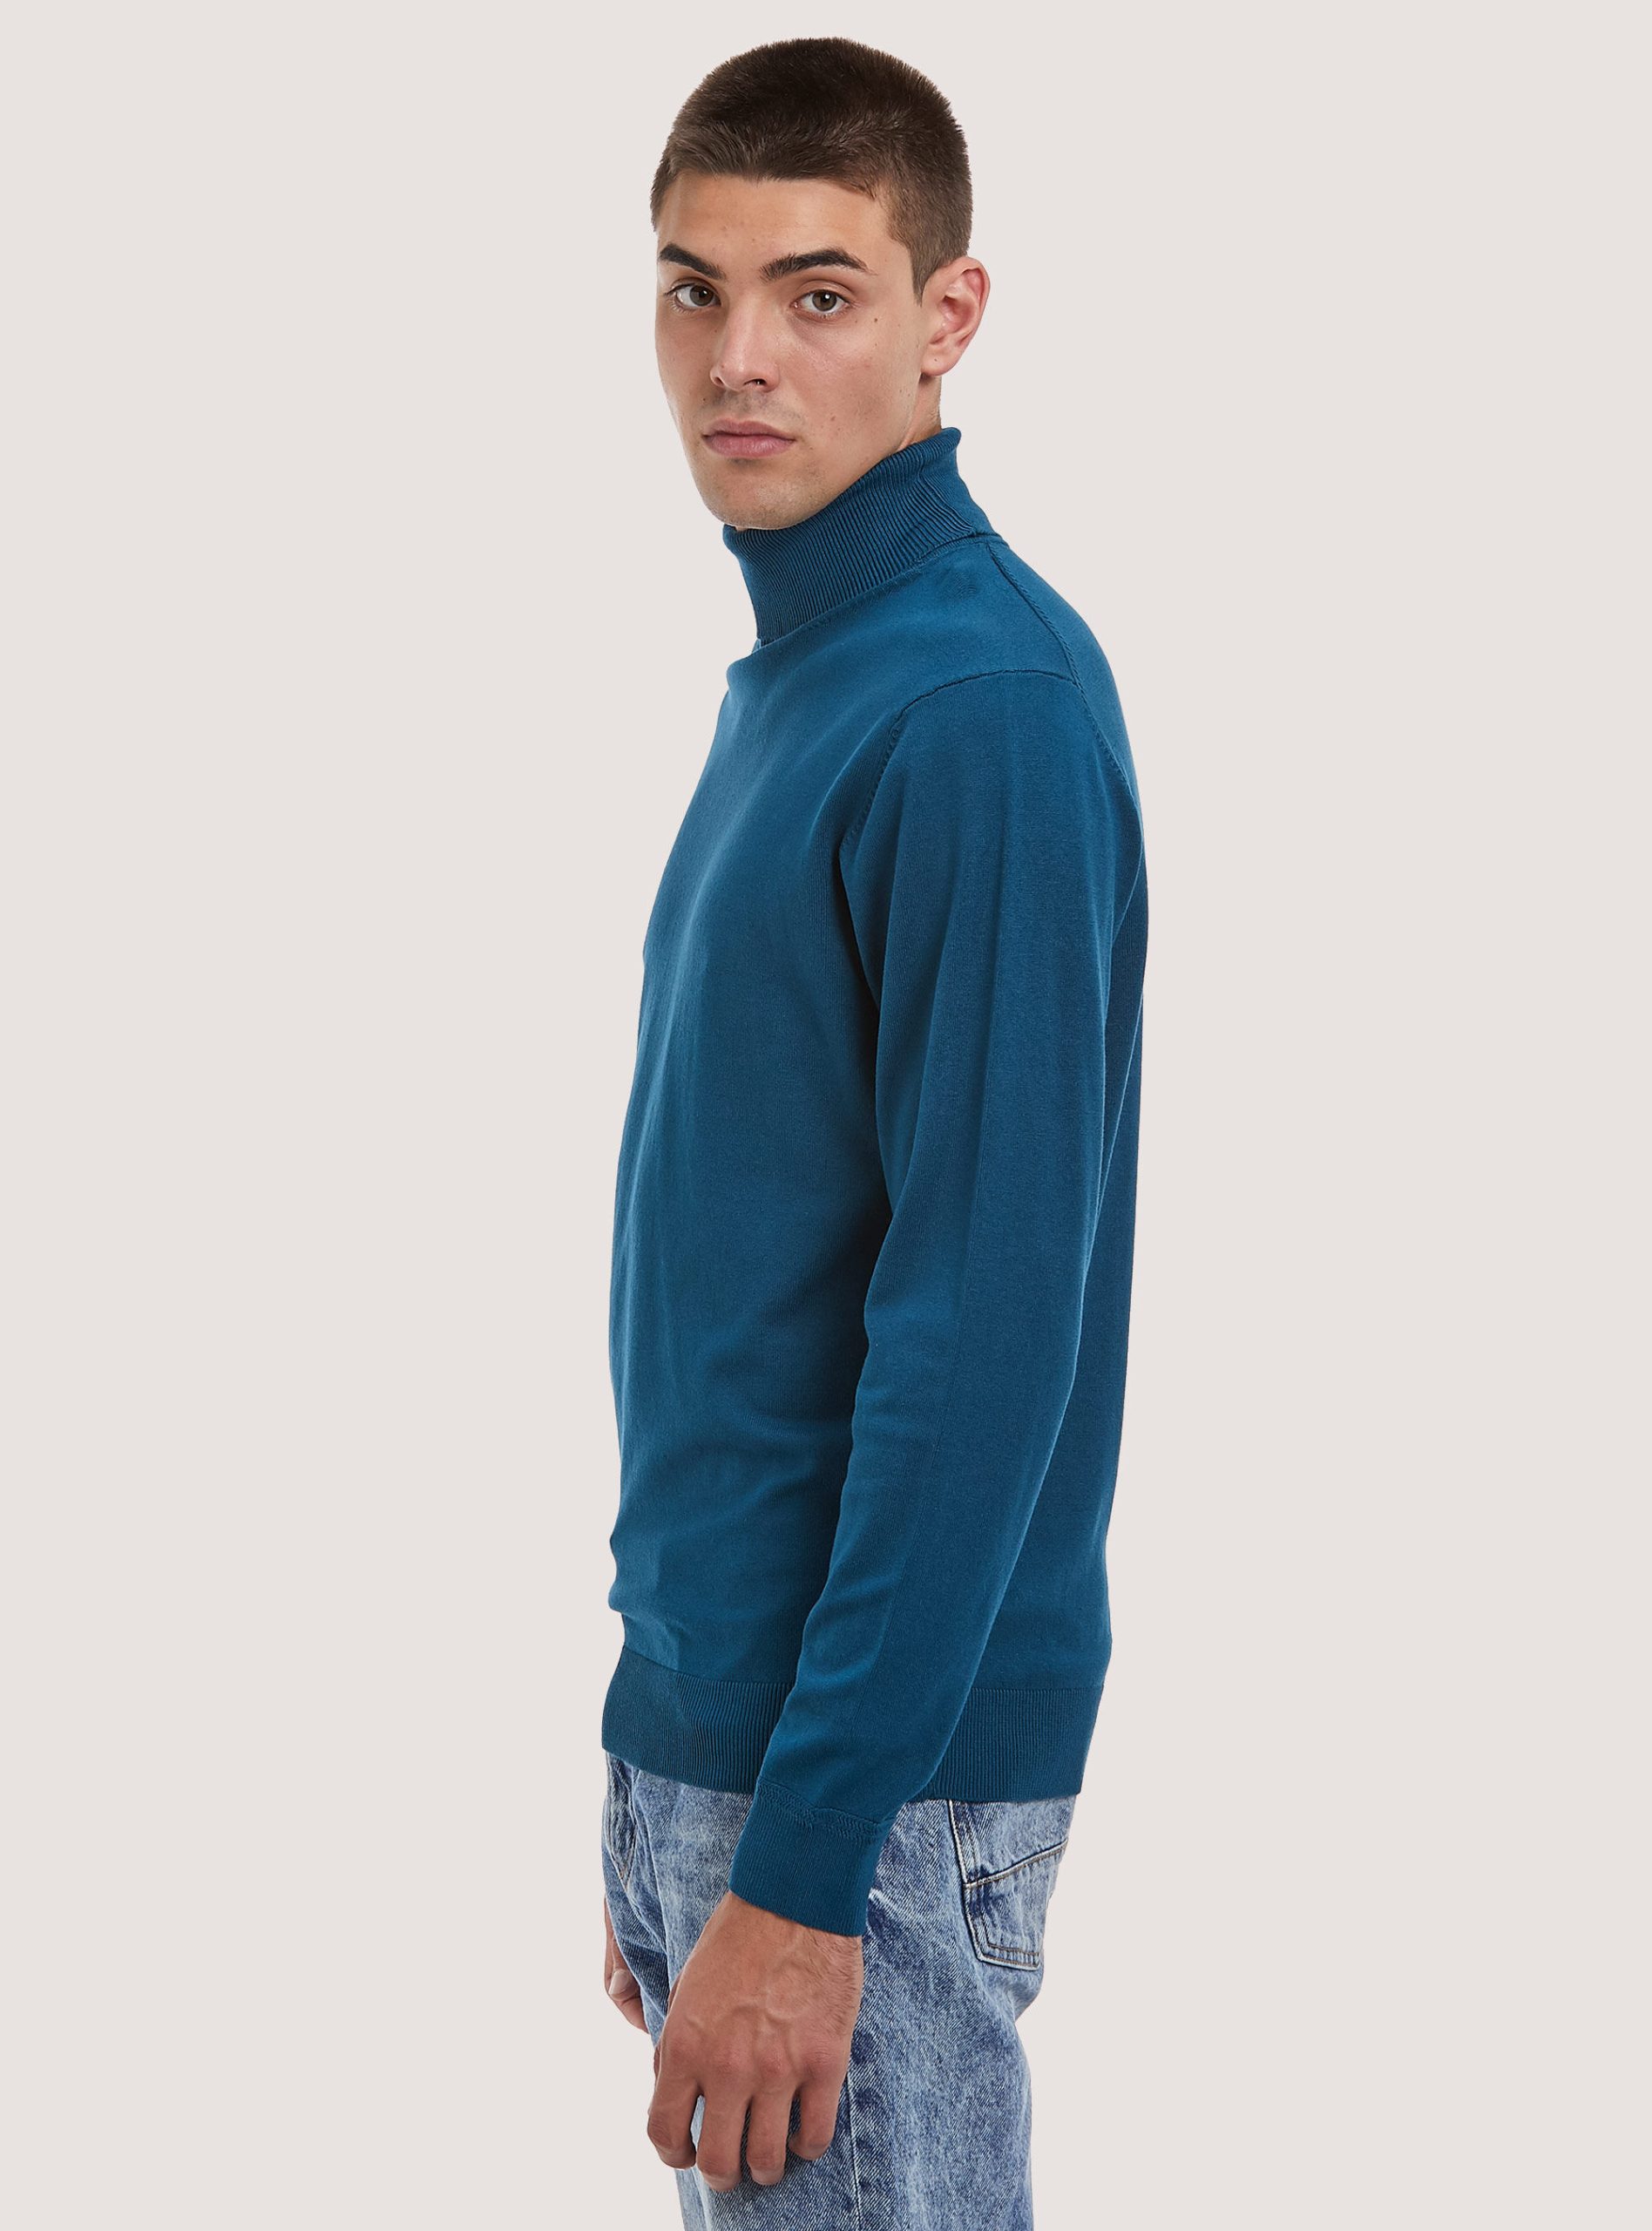 Alcott Strickwaren Plain-Coloured Turtleneck Pullover Technologie Männer Ob2 Blue Oil Med. – 2